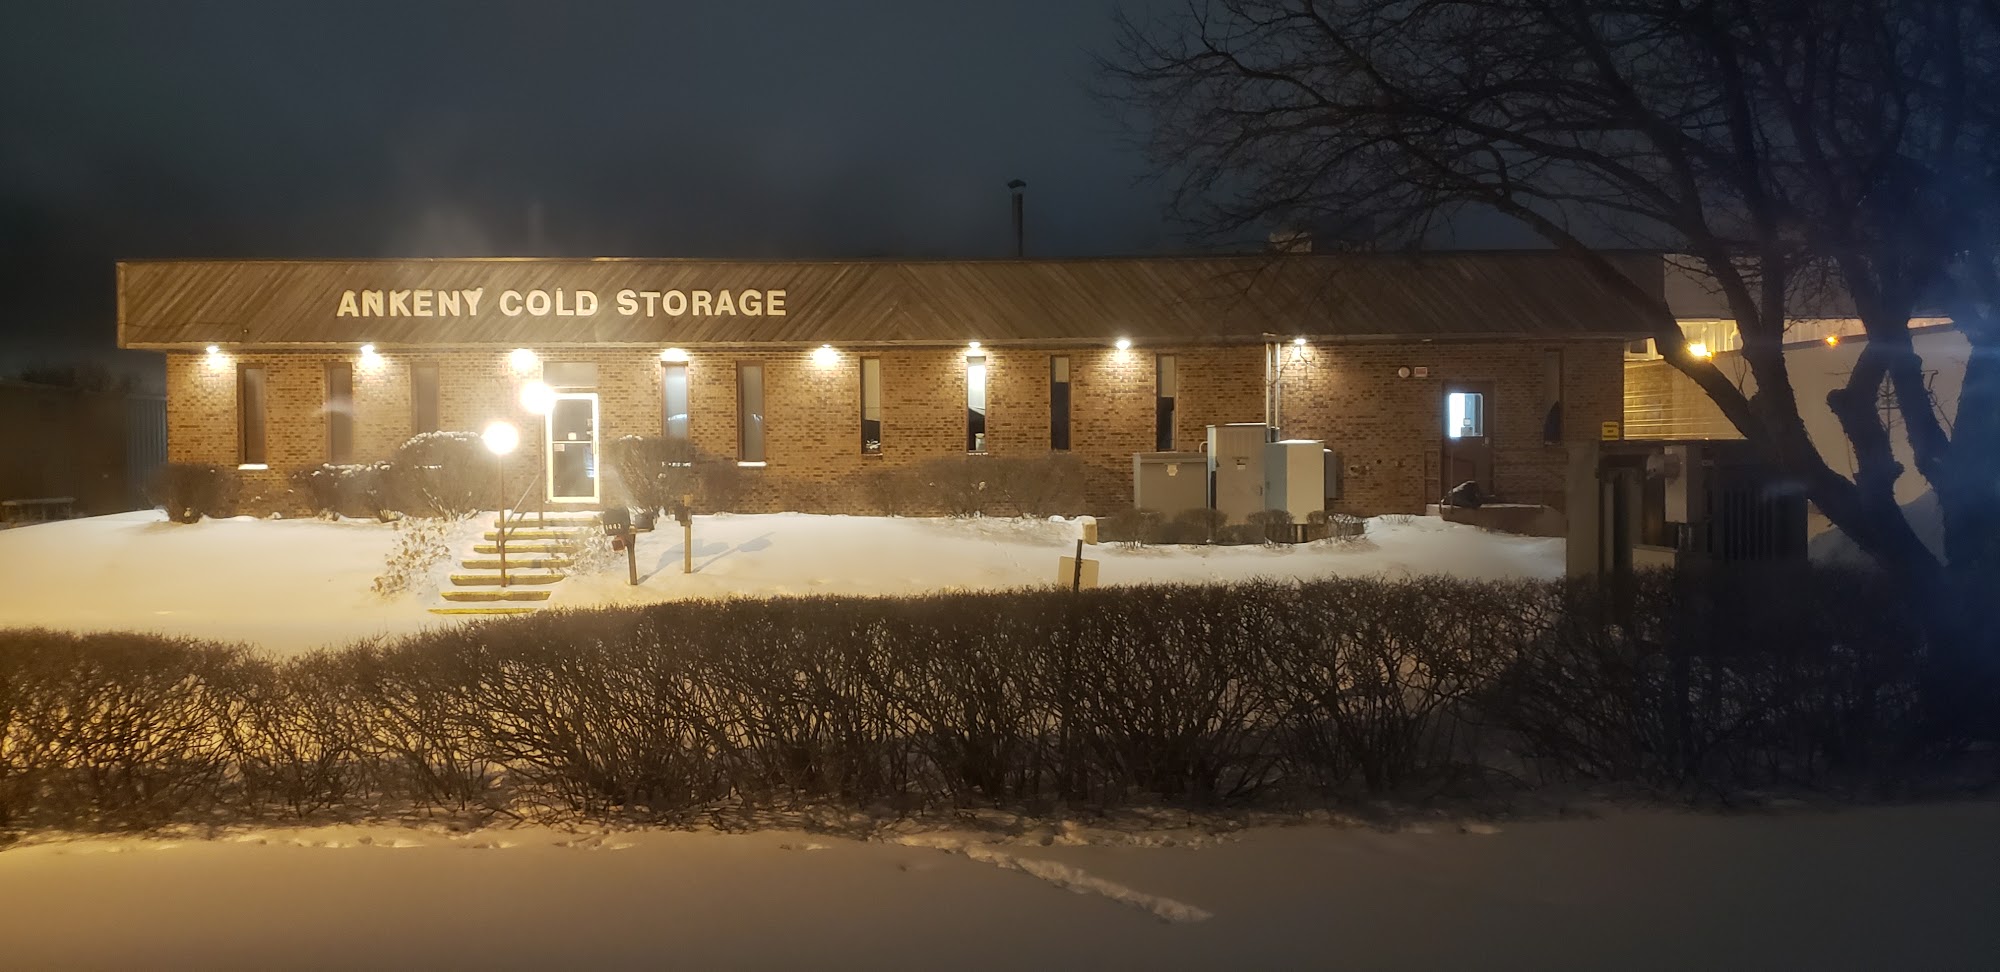 Ankeny Cold Storage